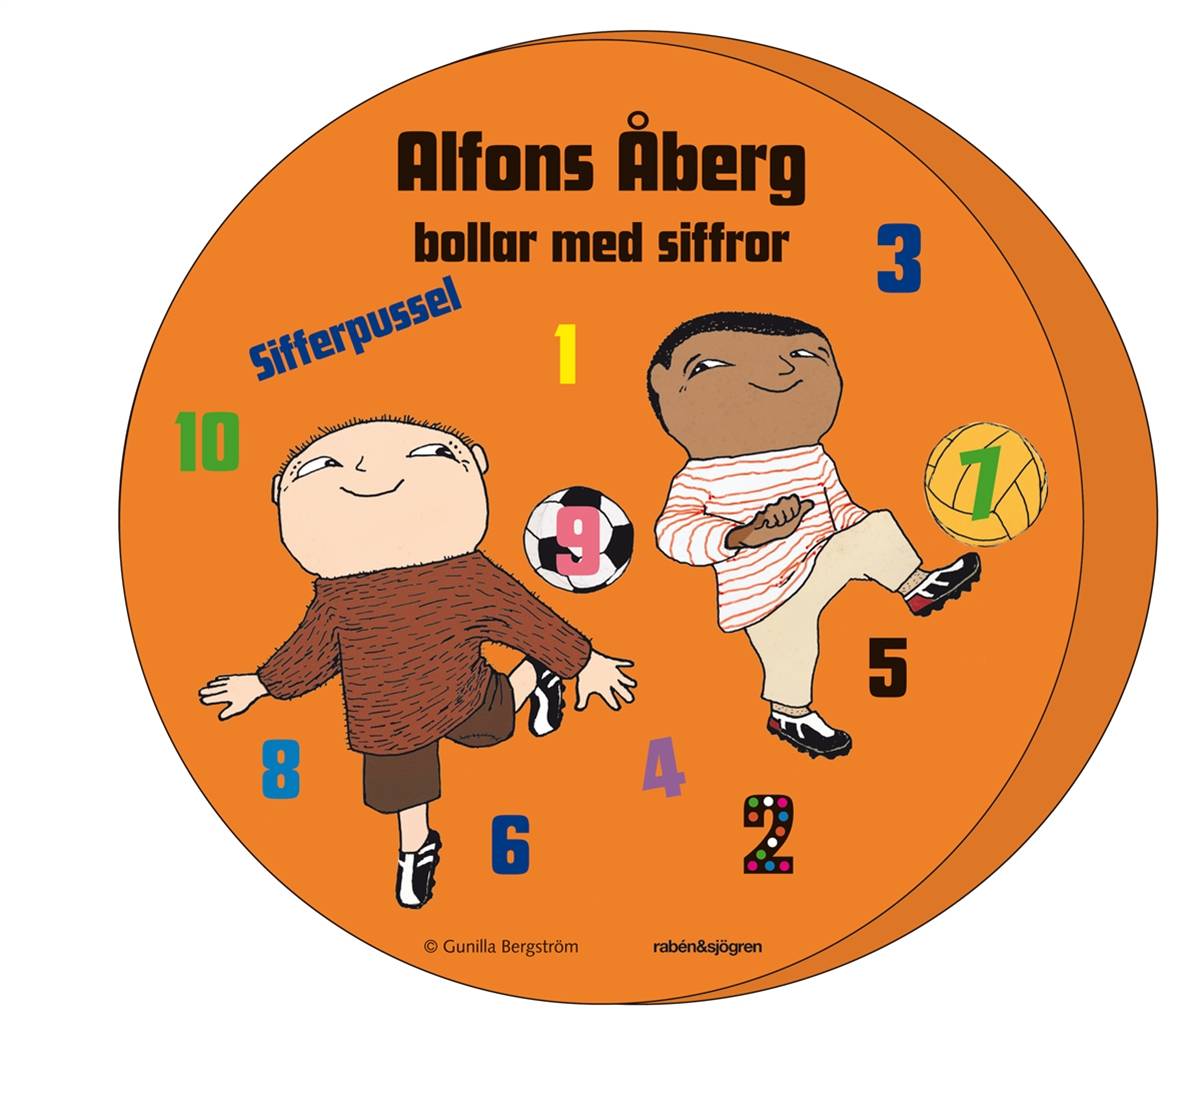 Alfons Åberg bollar med siffror - Sifferpussel